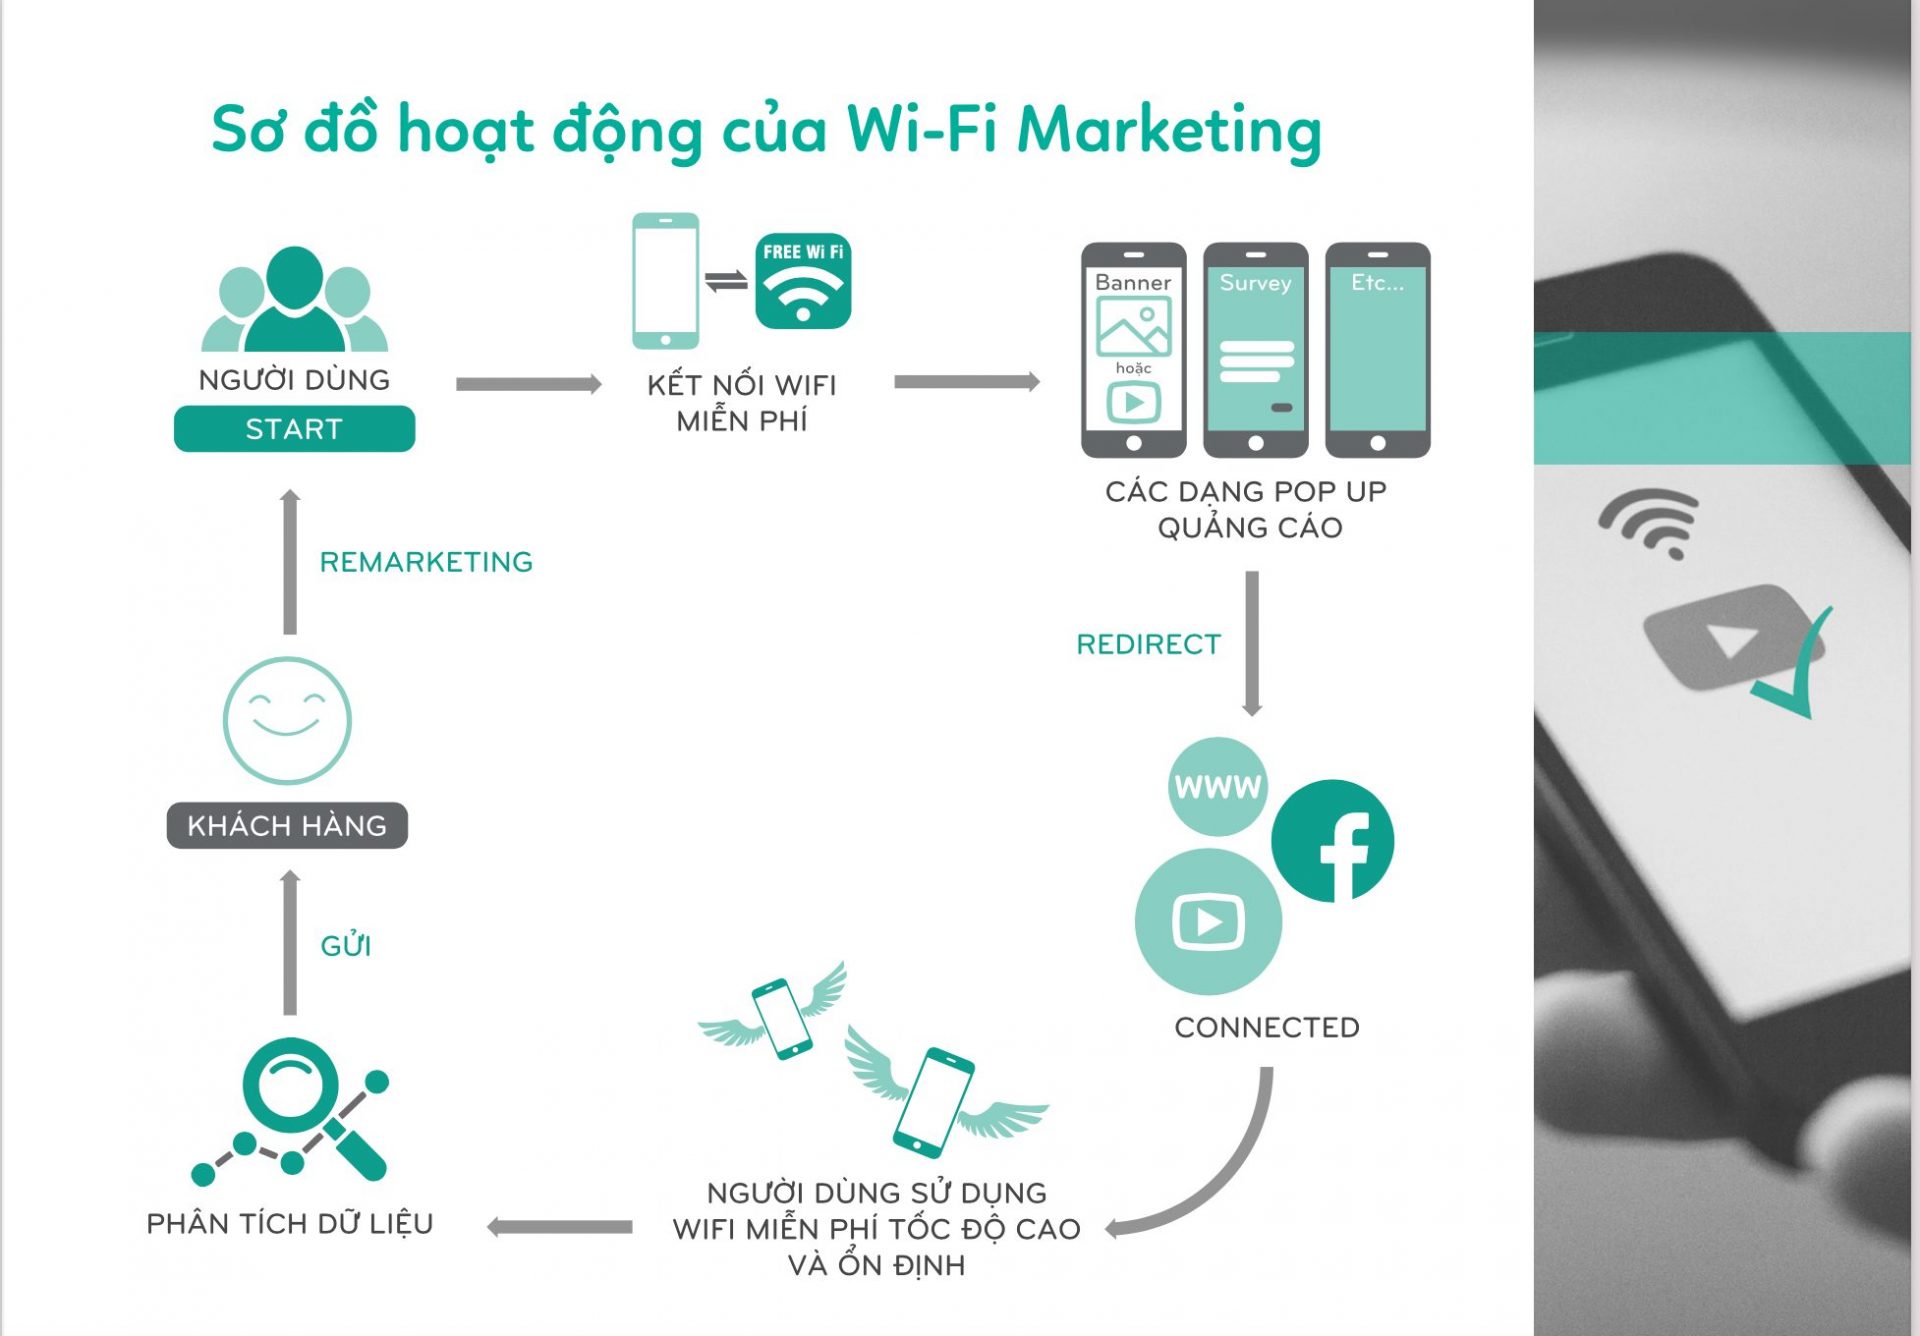 WiFi Marketing là gì? Lợi ích lâu dài của WiFi Marketing đến doanh nghiệp